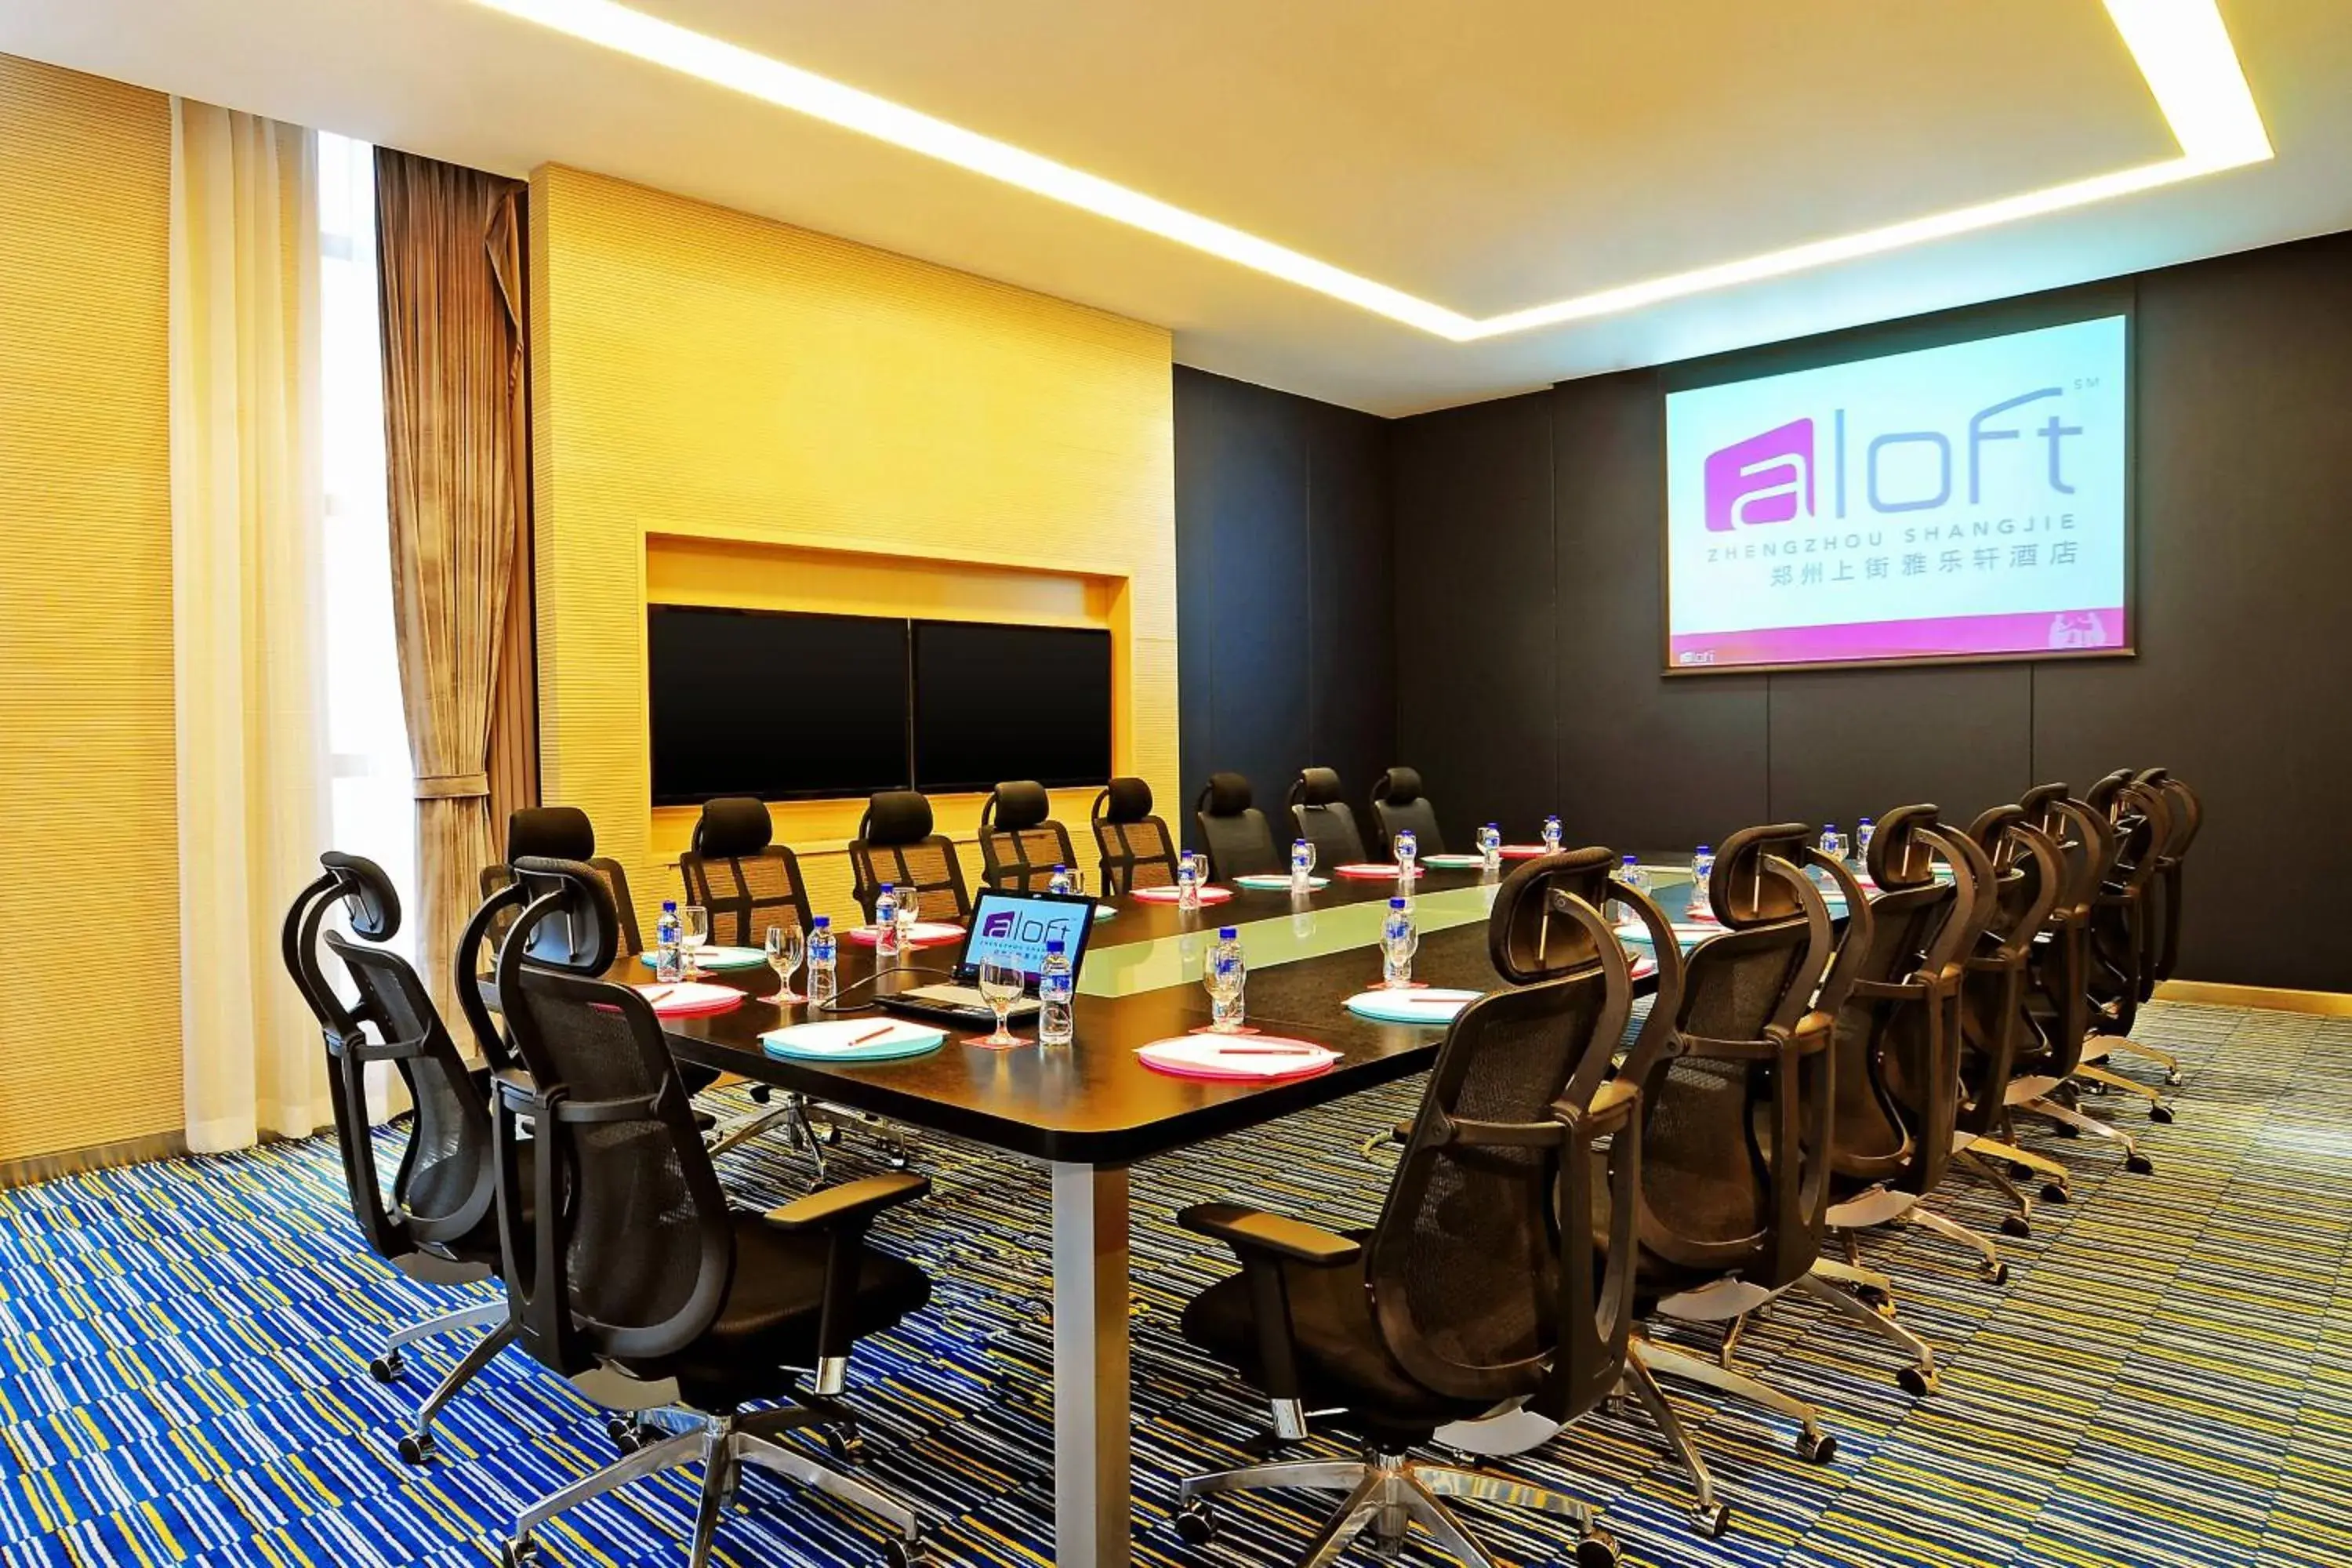 Meeting/conference room in Aloft Zhengzhou Shangjie